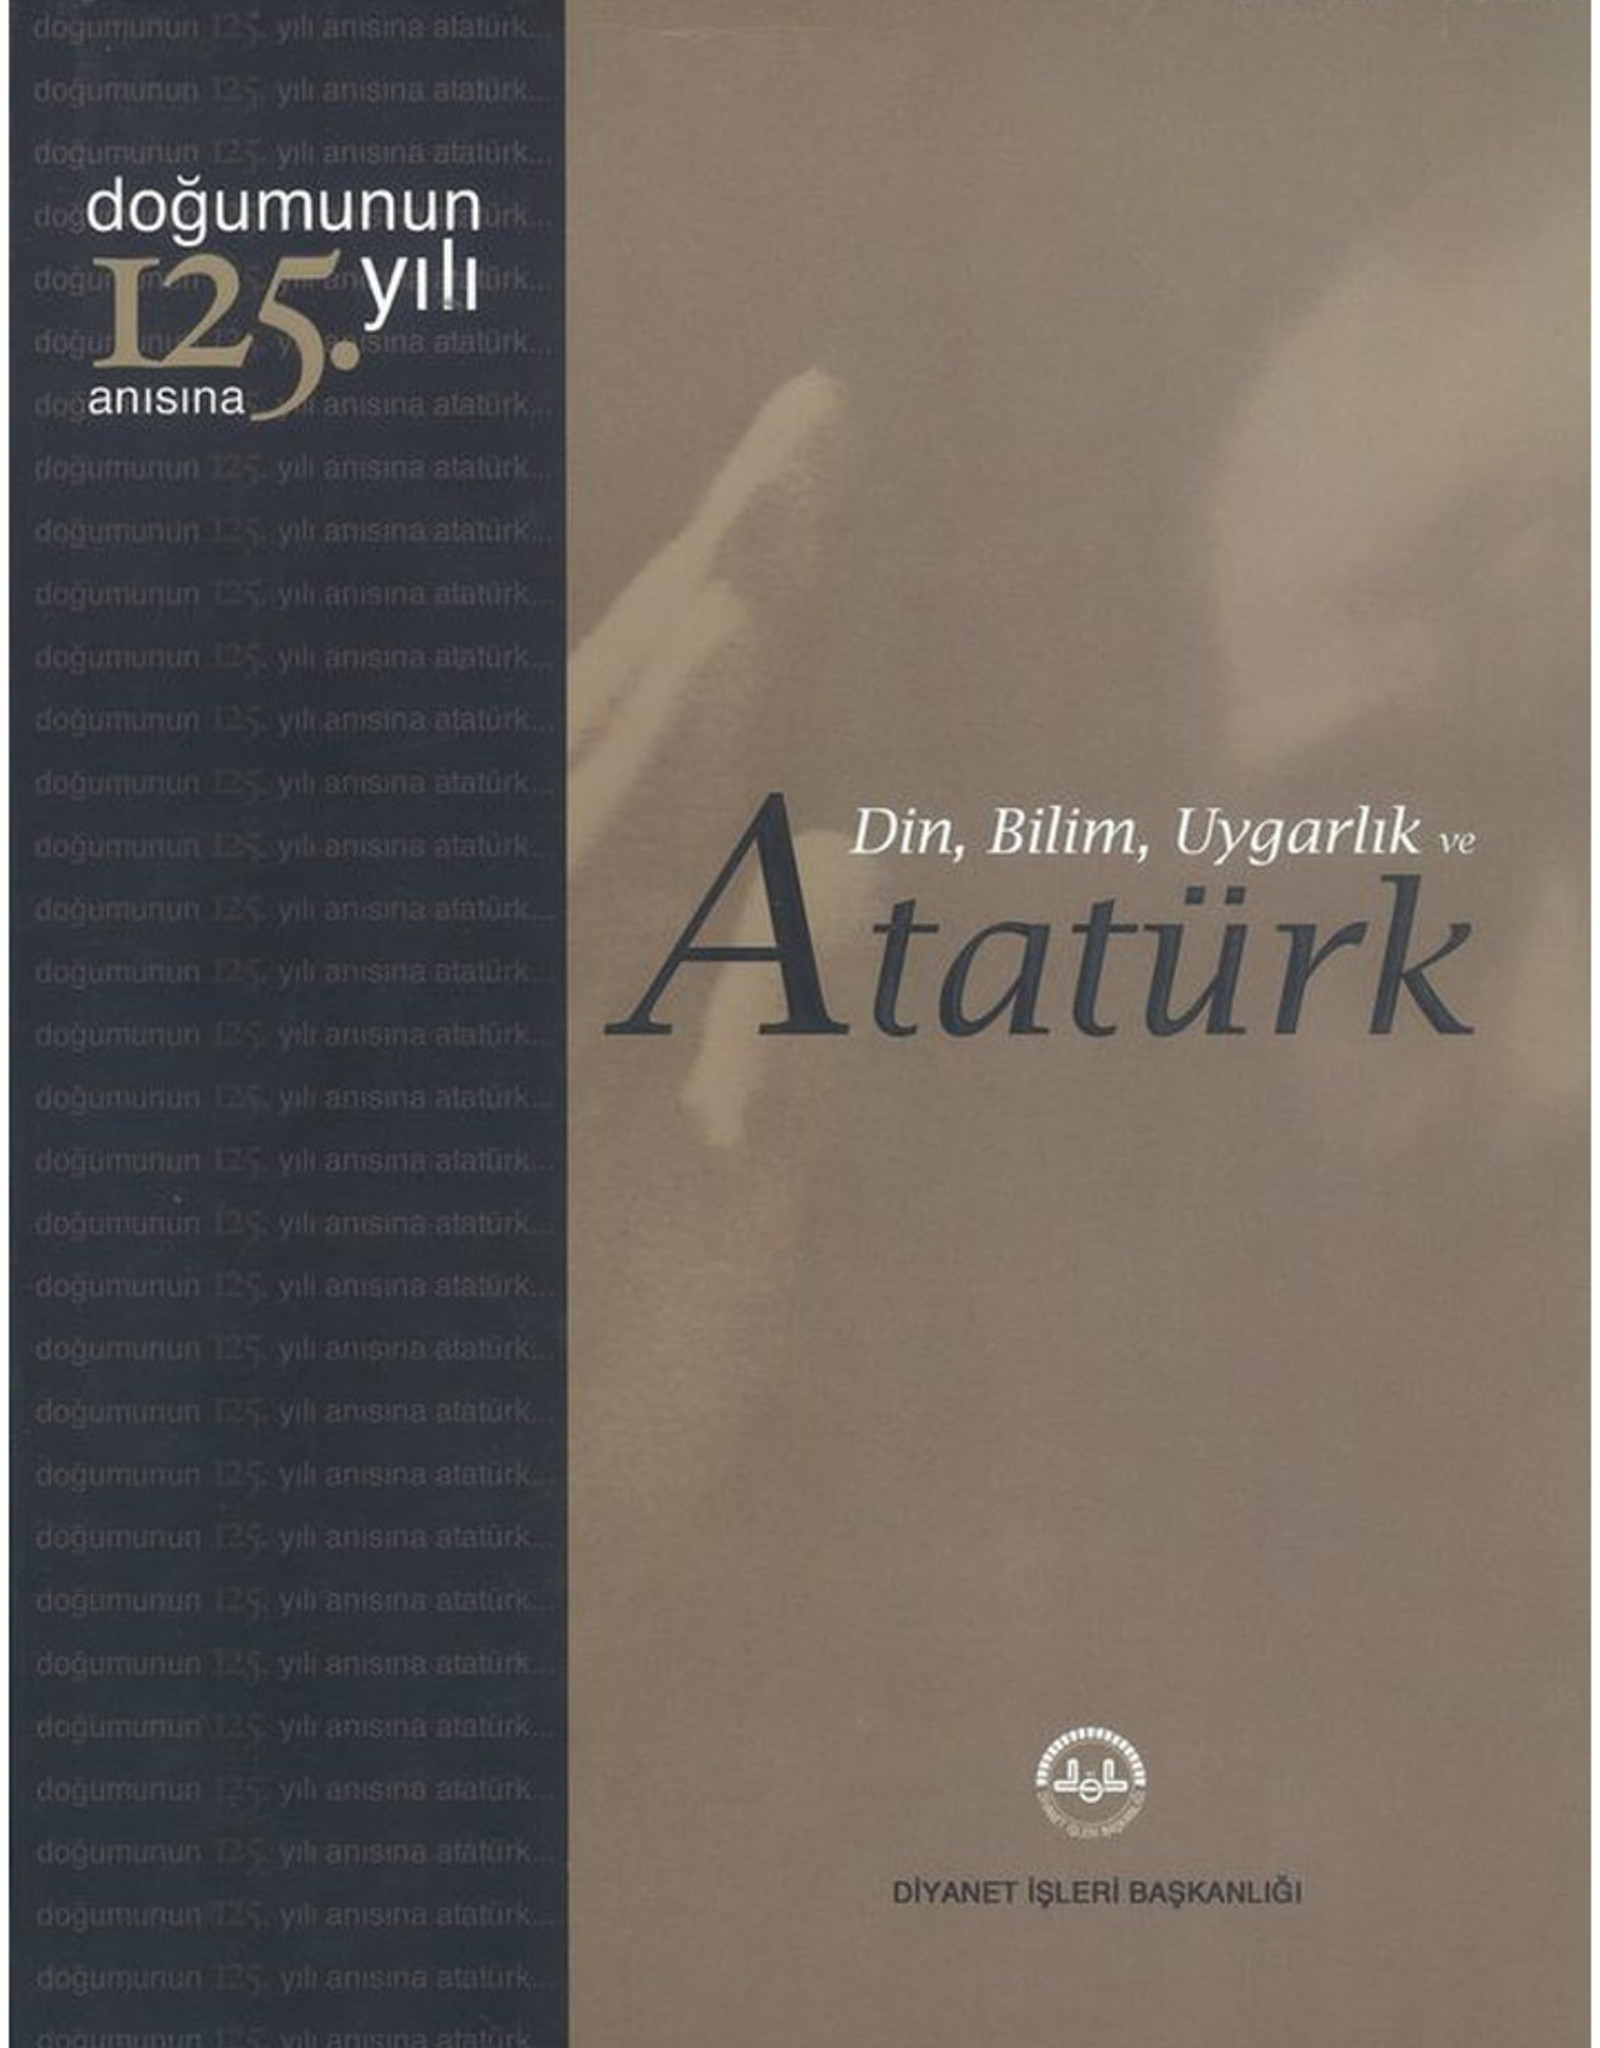 Din Bilim Uygarlık ve Atatürk